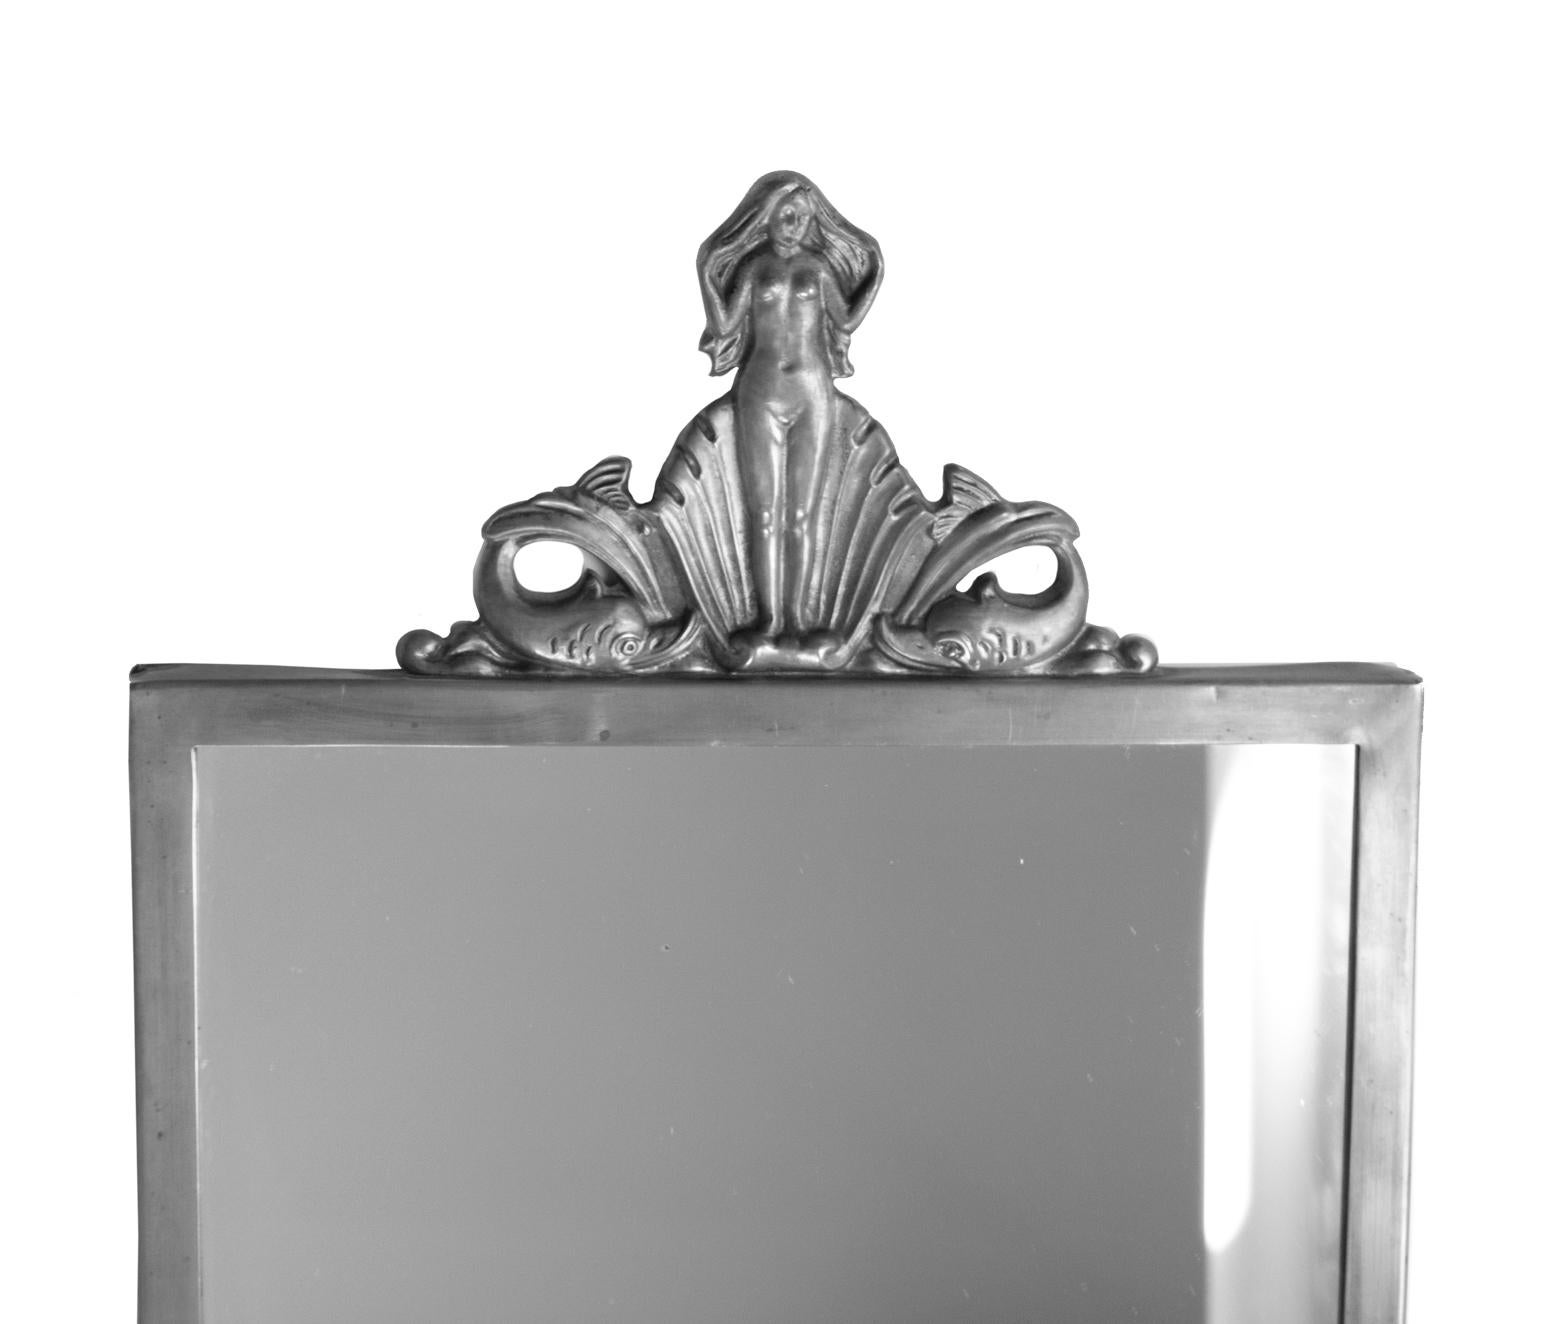 Miroir moderne suédois, Art déco, par Oscar Antonsson (1898-1960), en étain provenant d'Ystad Metall, 1931.
Estampillé Ystad Tenn XX. La couronne est décorée de la naissance de Vénus debout dans un coquillage, flanquée de deux Delphes. Mesures : 62